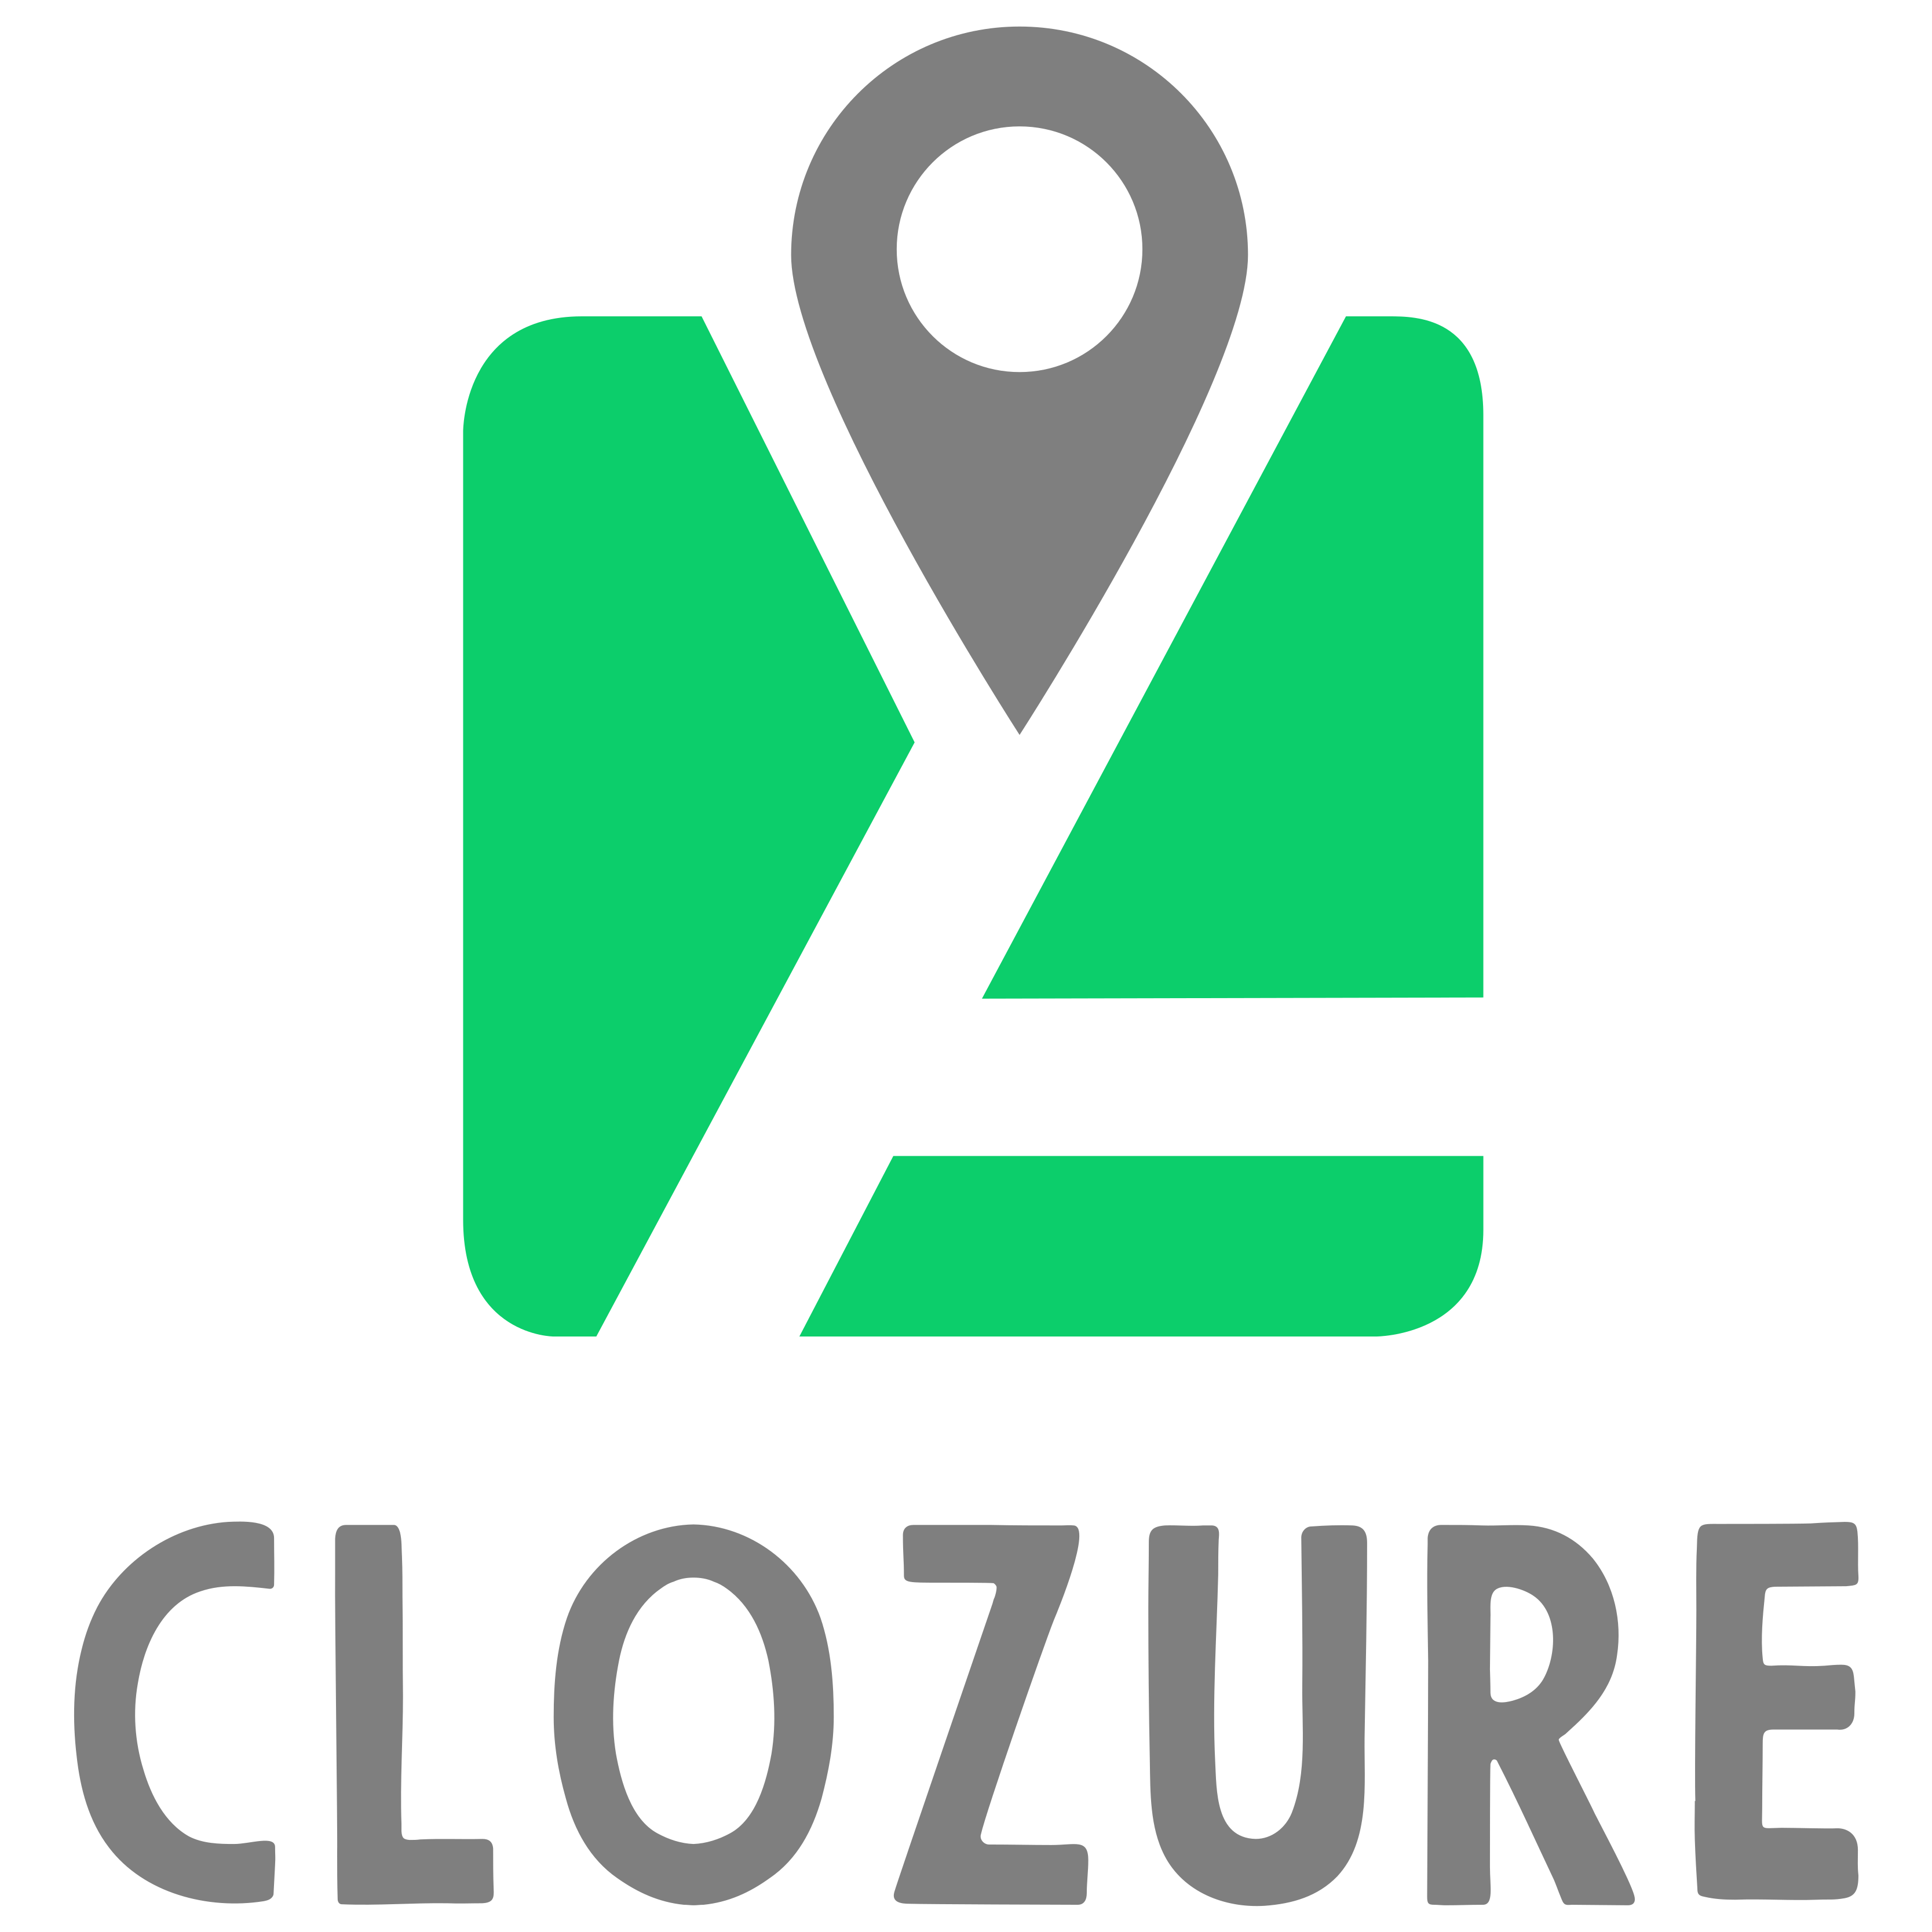 Clozure